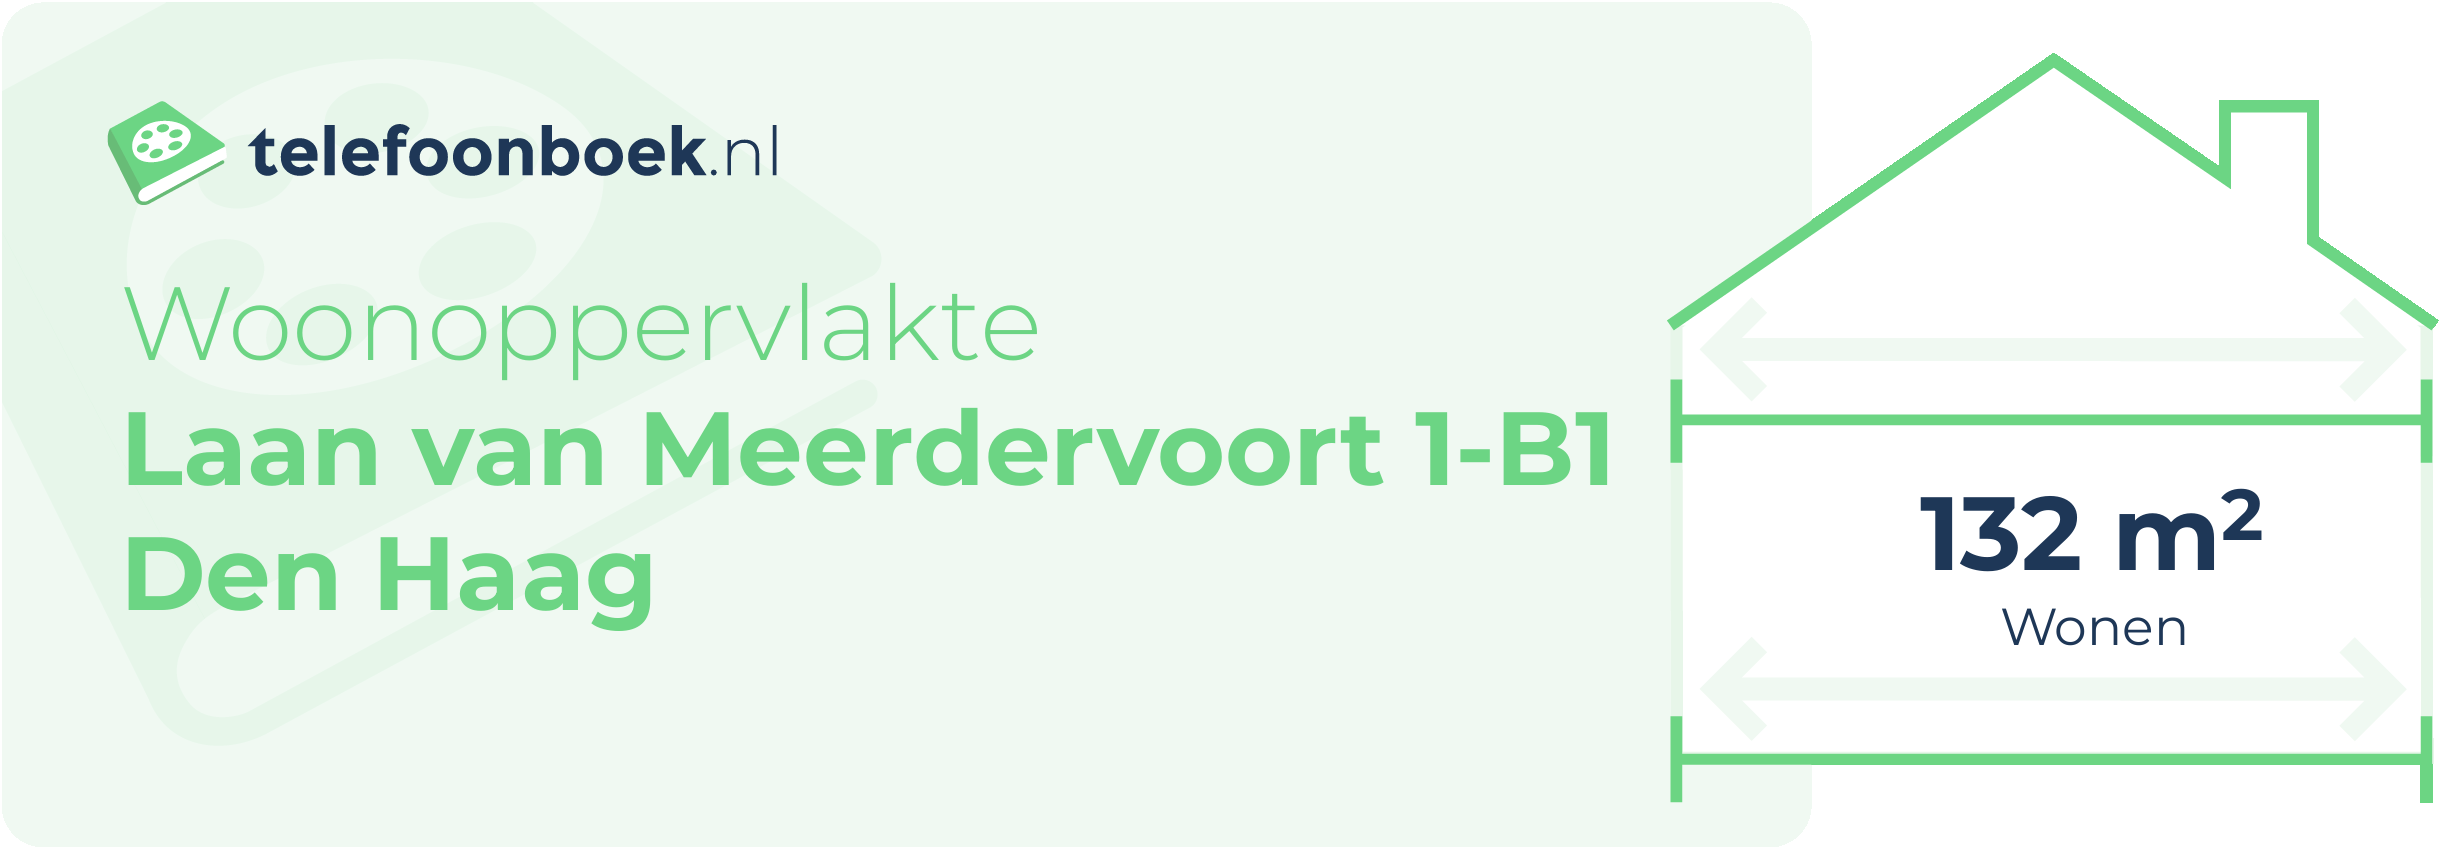 Woonoppervlakte Laan Van Meerdervoort 1-B1 Den Haag